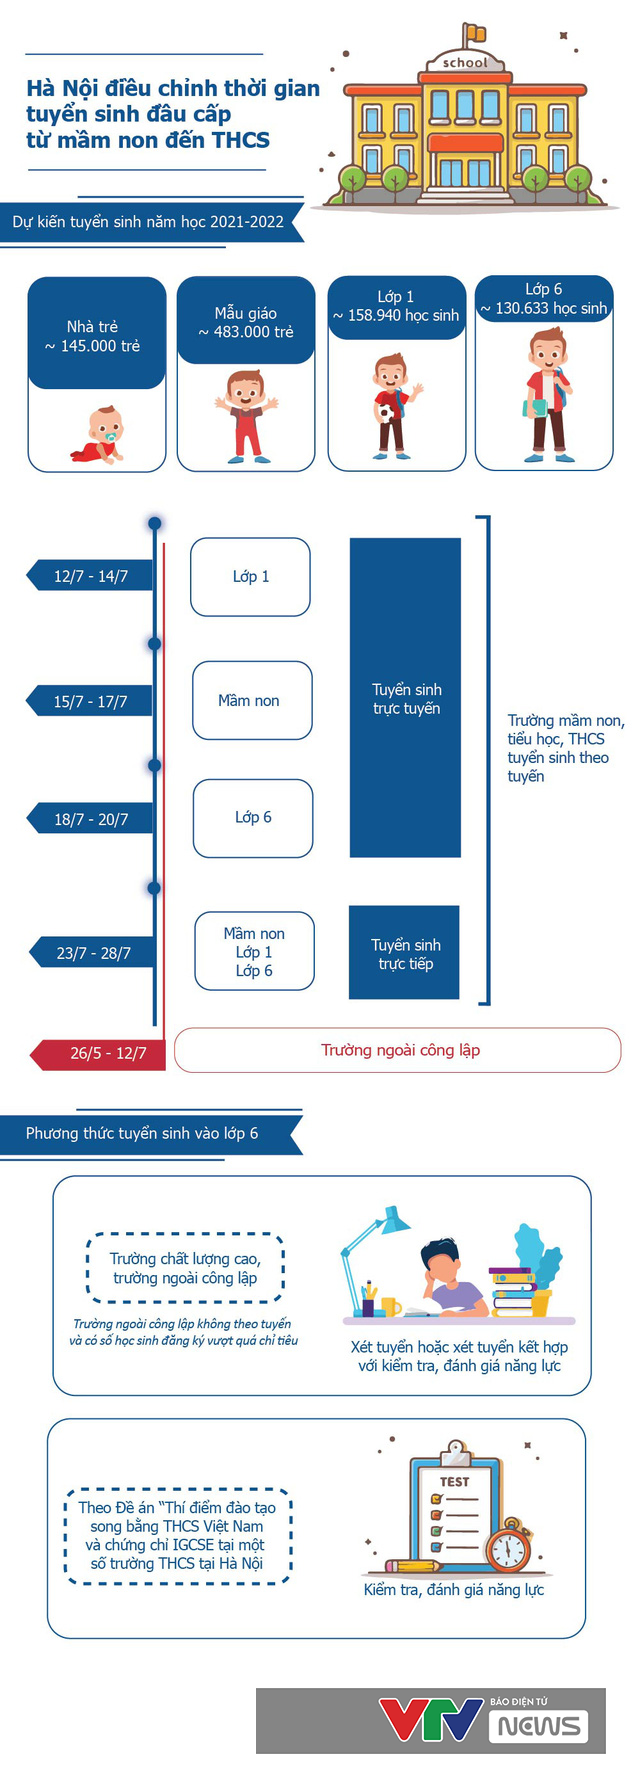 [Infographic] Hà Nội điều chỉnh thời gian tuyển sinh đầu cấp từ mầm non đến THCS - Ảnh 1.